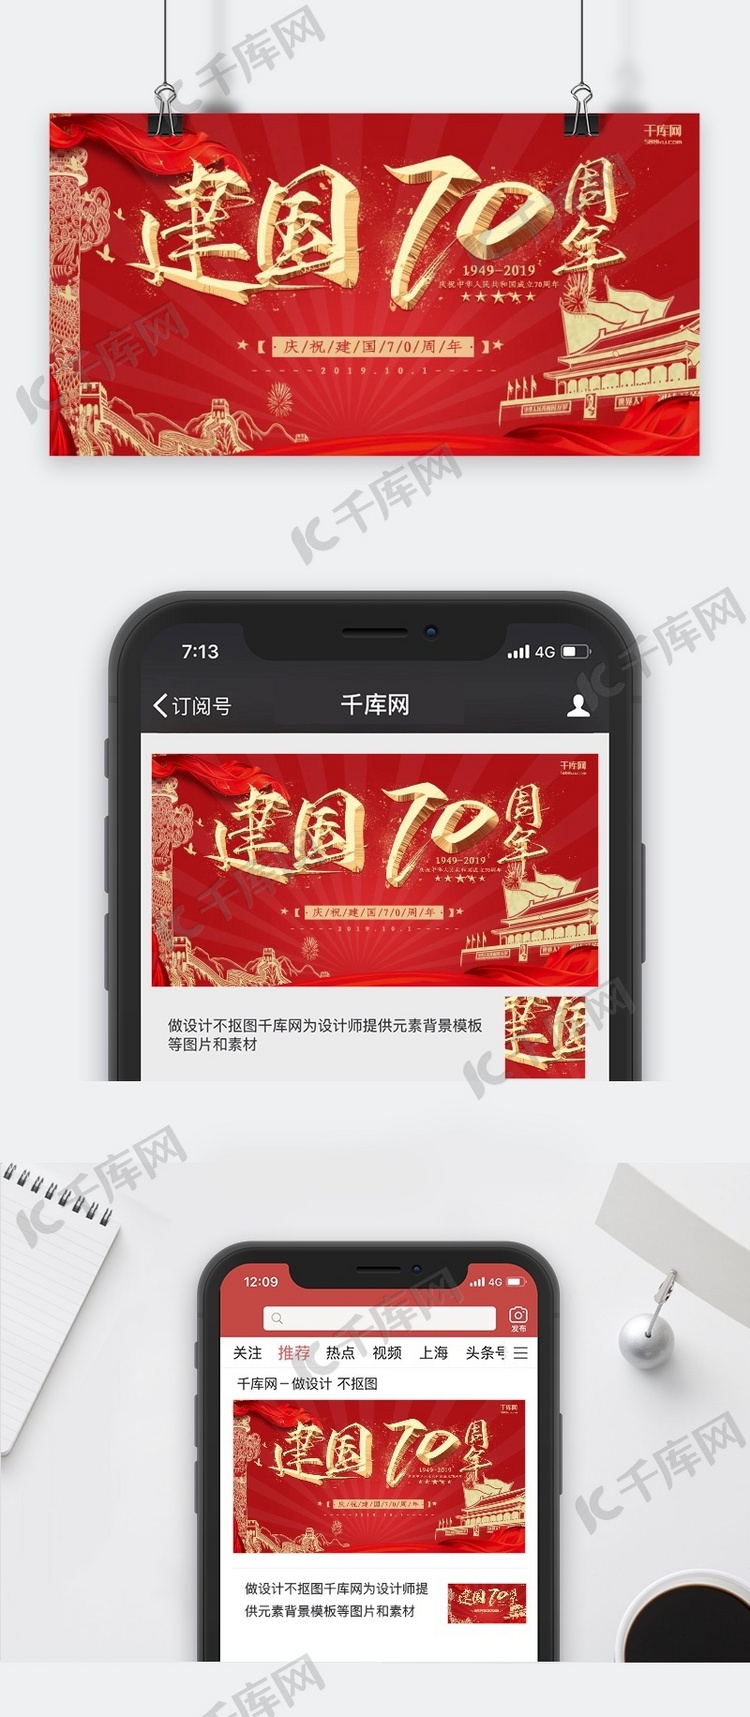 新中国成立70周年红色天安门节日宣传公众号封面图